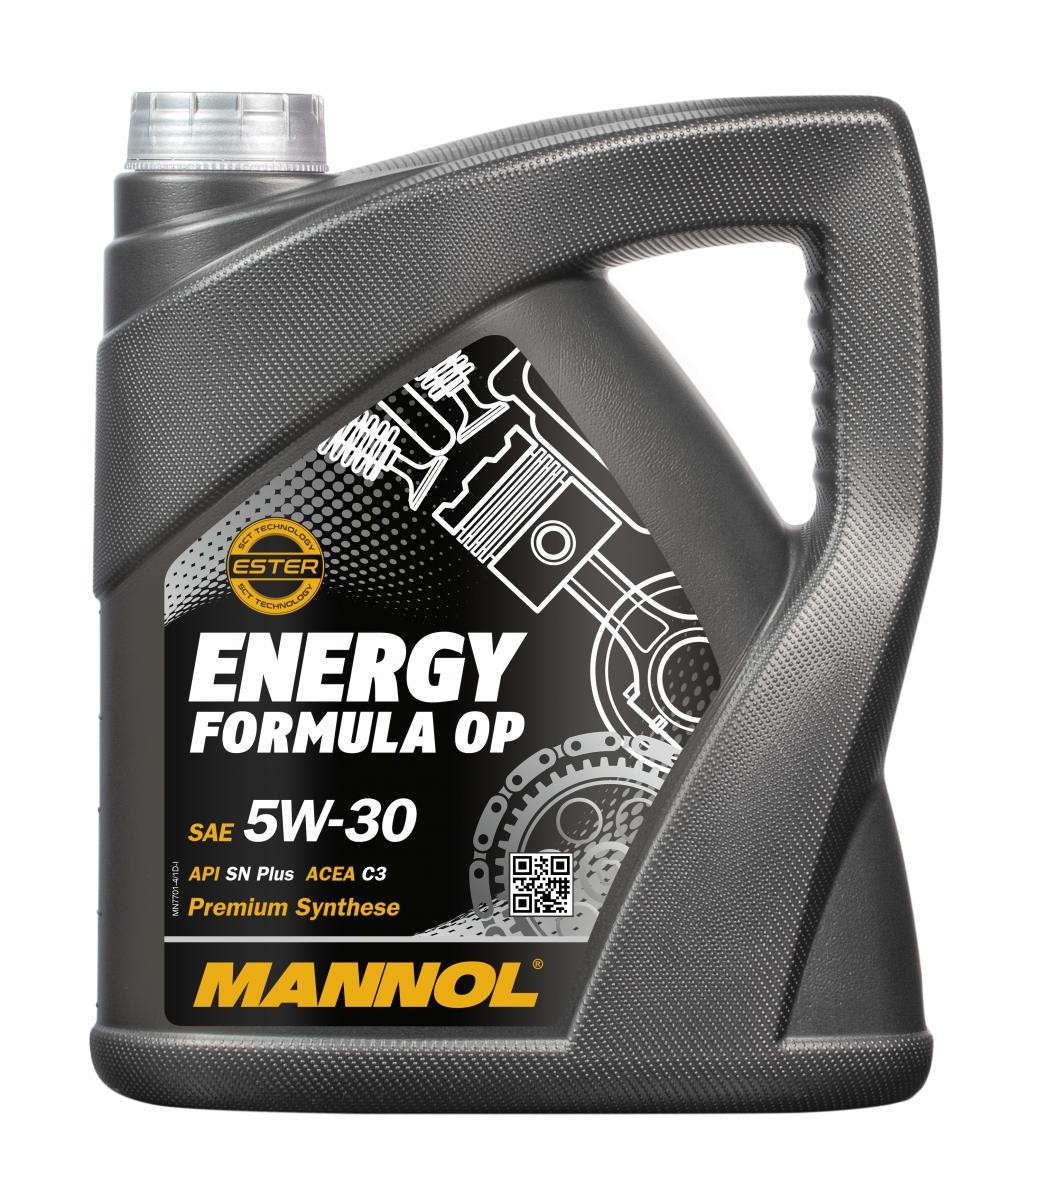 MANNOL MN7701-4 Olie voor auto 5W-30, 4L, Synthetische olie Volvo in originele kwaliteit